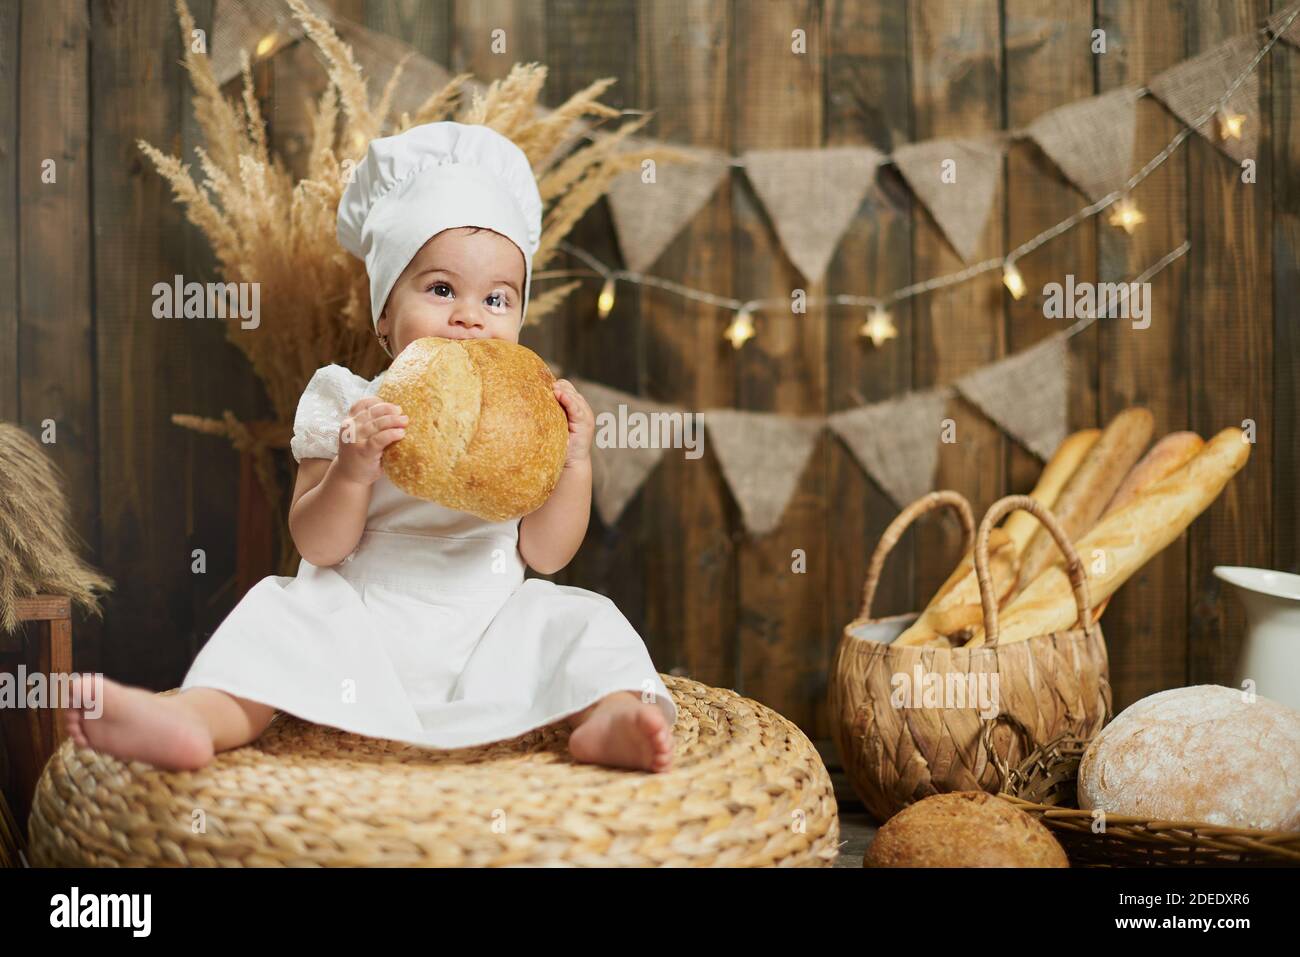 Little cute girl baker eating fresh bread Stock Photo